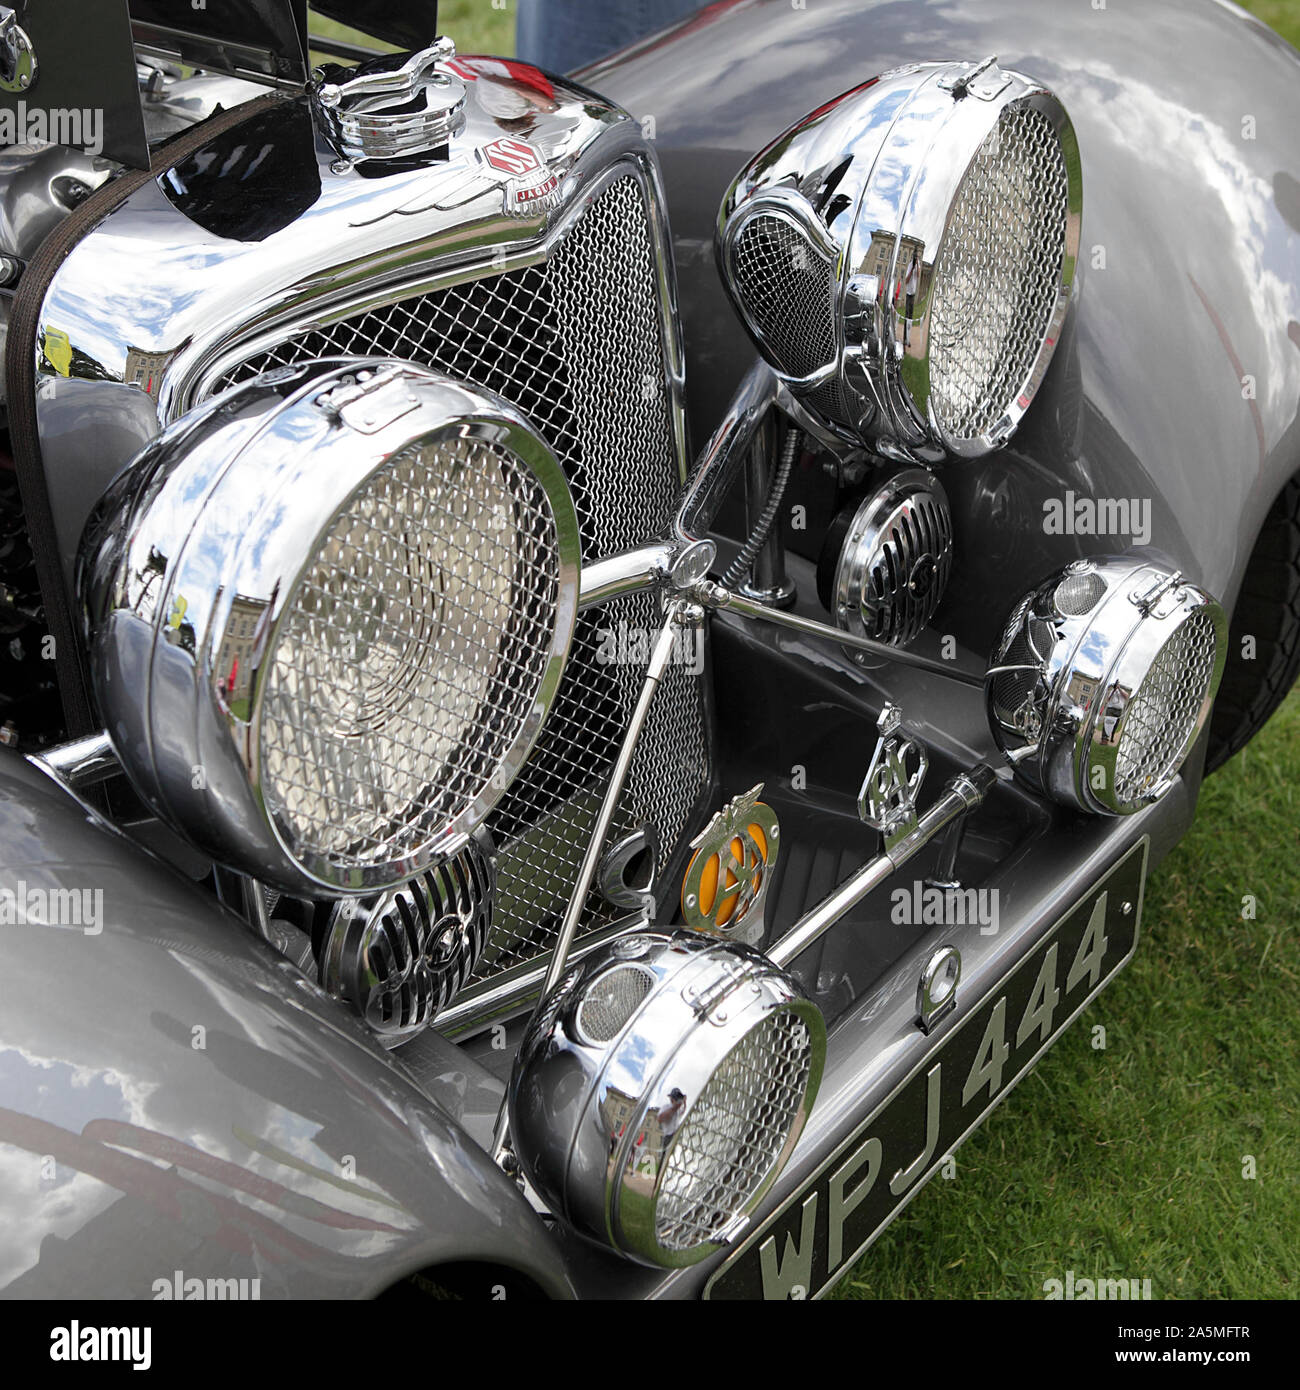 Vu ici, c'est un Jaguar SS kit car (1 de 5 images), exposées à un rallye de voitures anciennes dans le Shropshire, en Angleterre. Banque D'Images